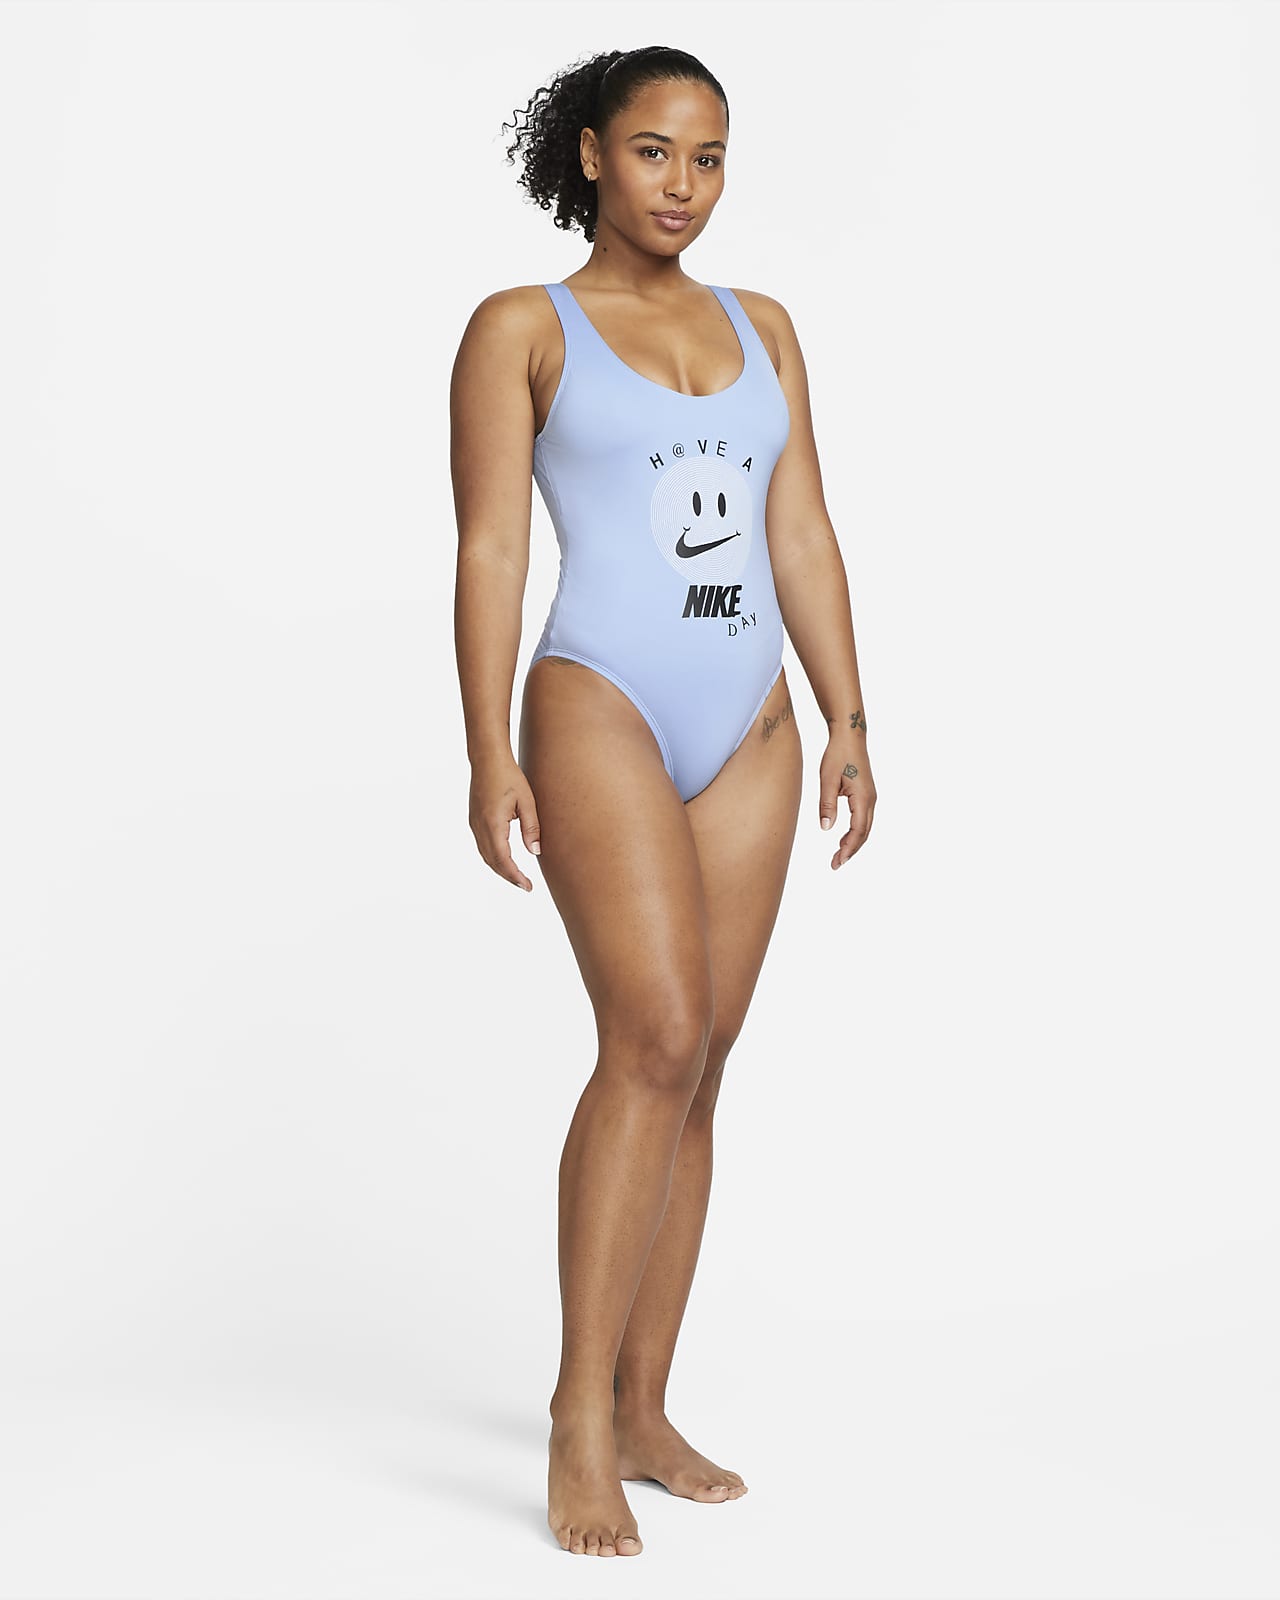 Ocean Blues Women's Black High Cut Low Back One Piece Swimwear